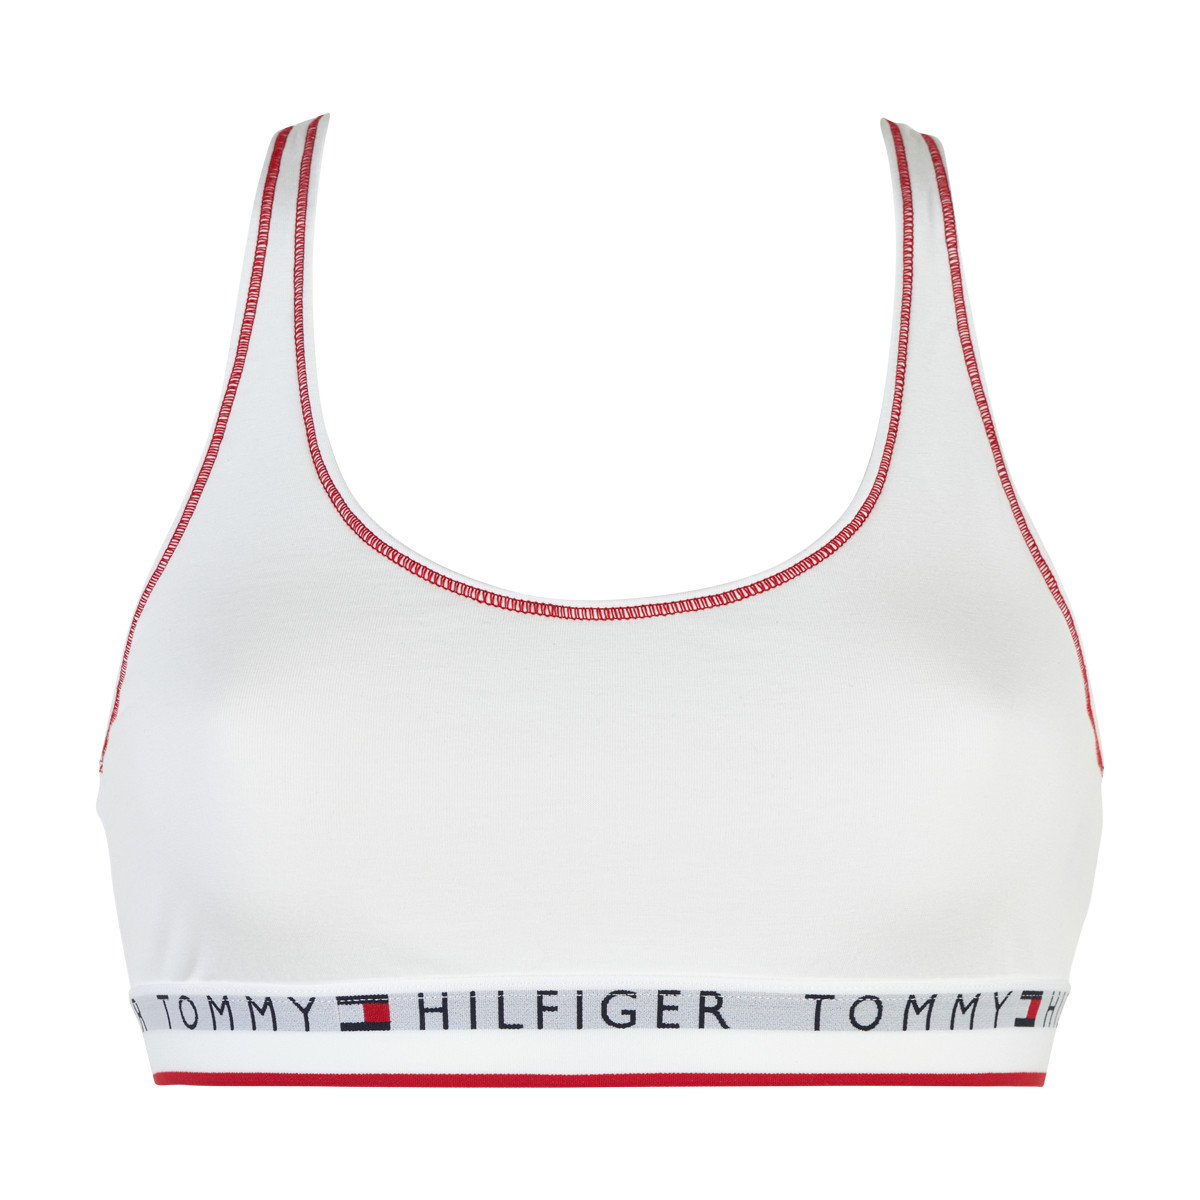 Tommy Hilfiger Lingeri Bralette Bikini Top, Farve: Hvid, Størrelse: XL, Dame